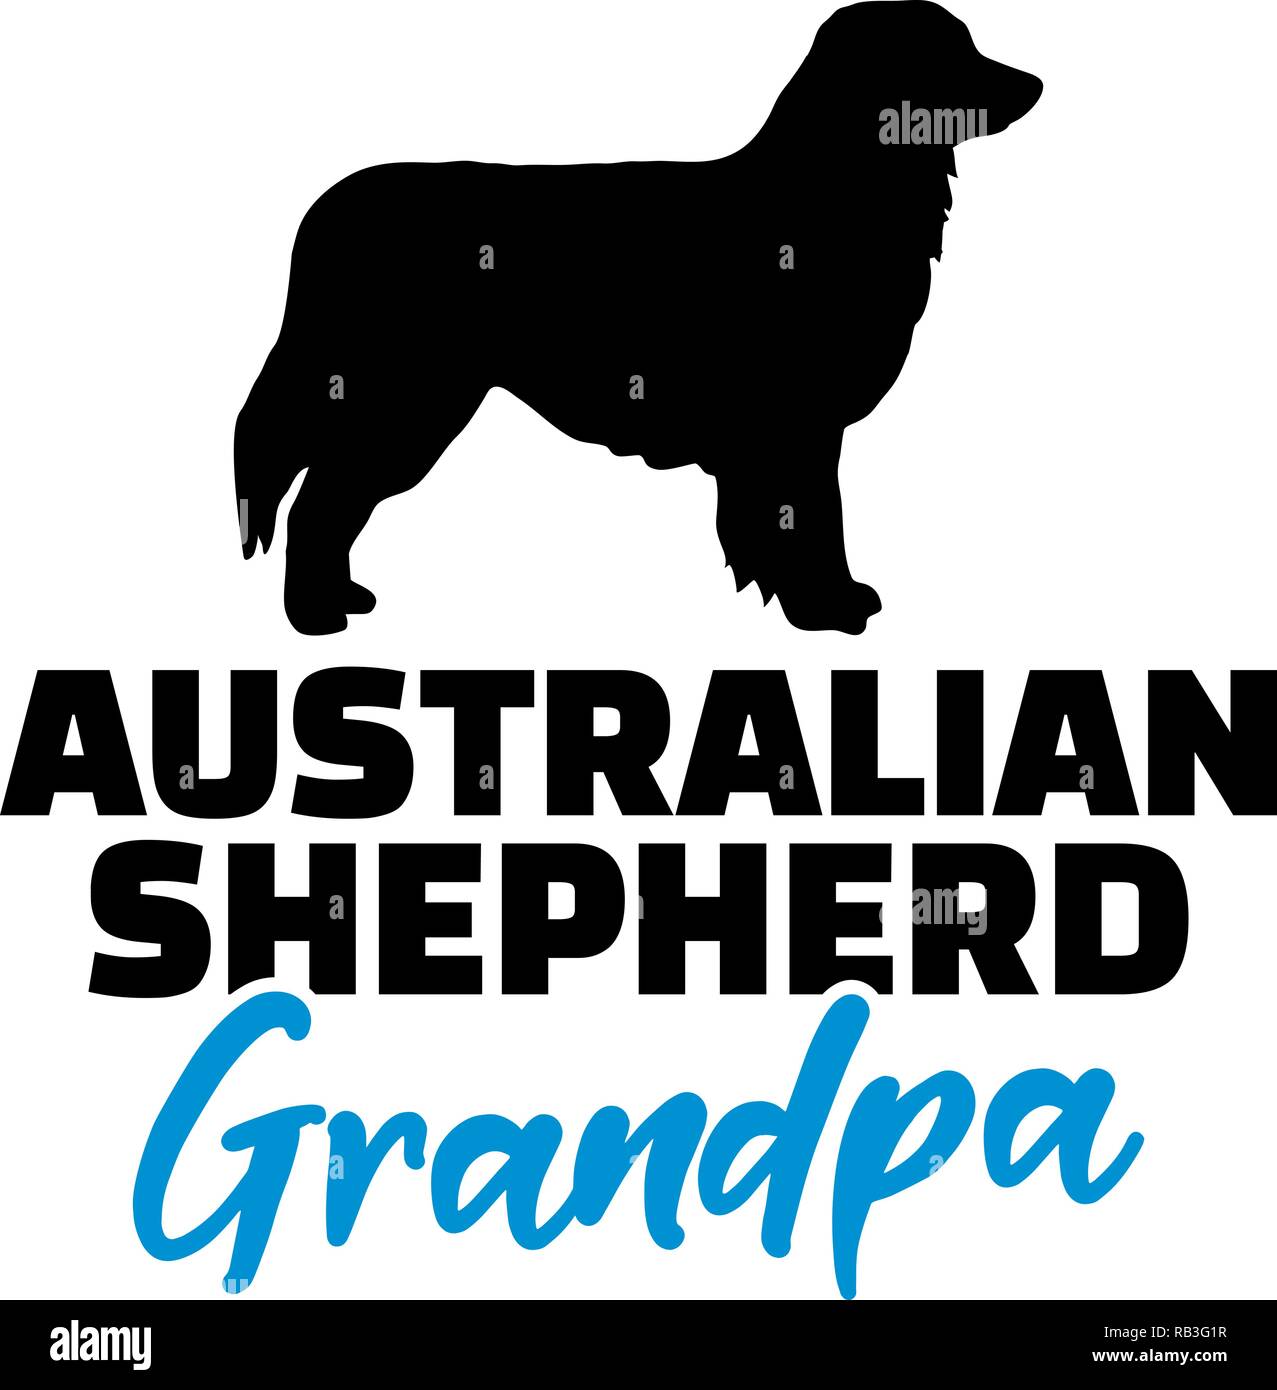 Australian Shepherd Grandpa silhouette black Stock Vector